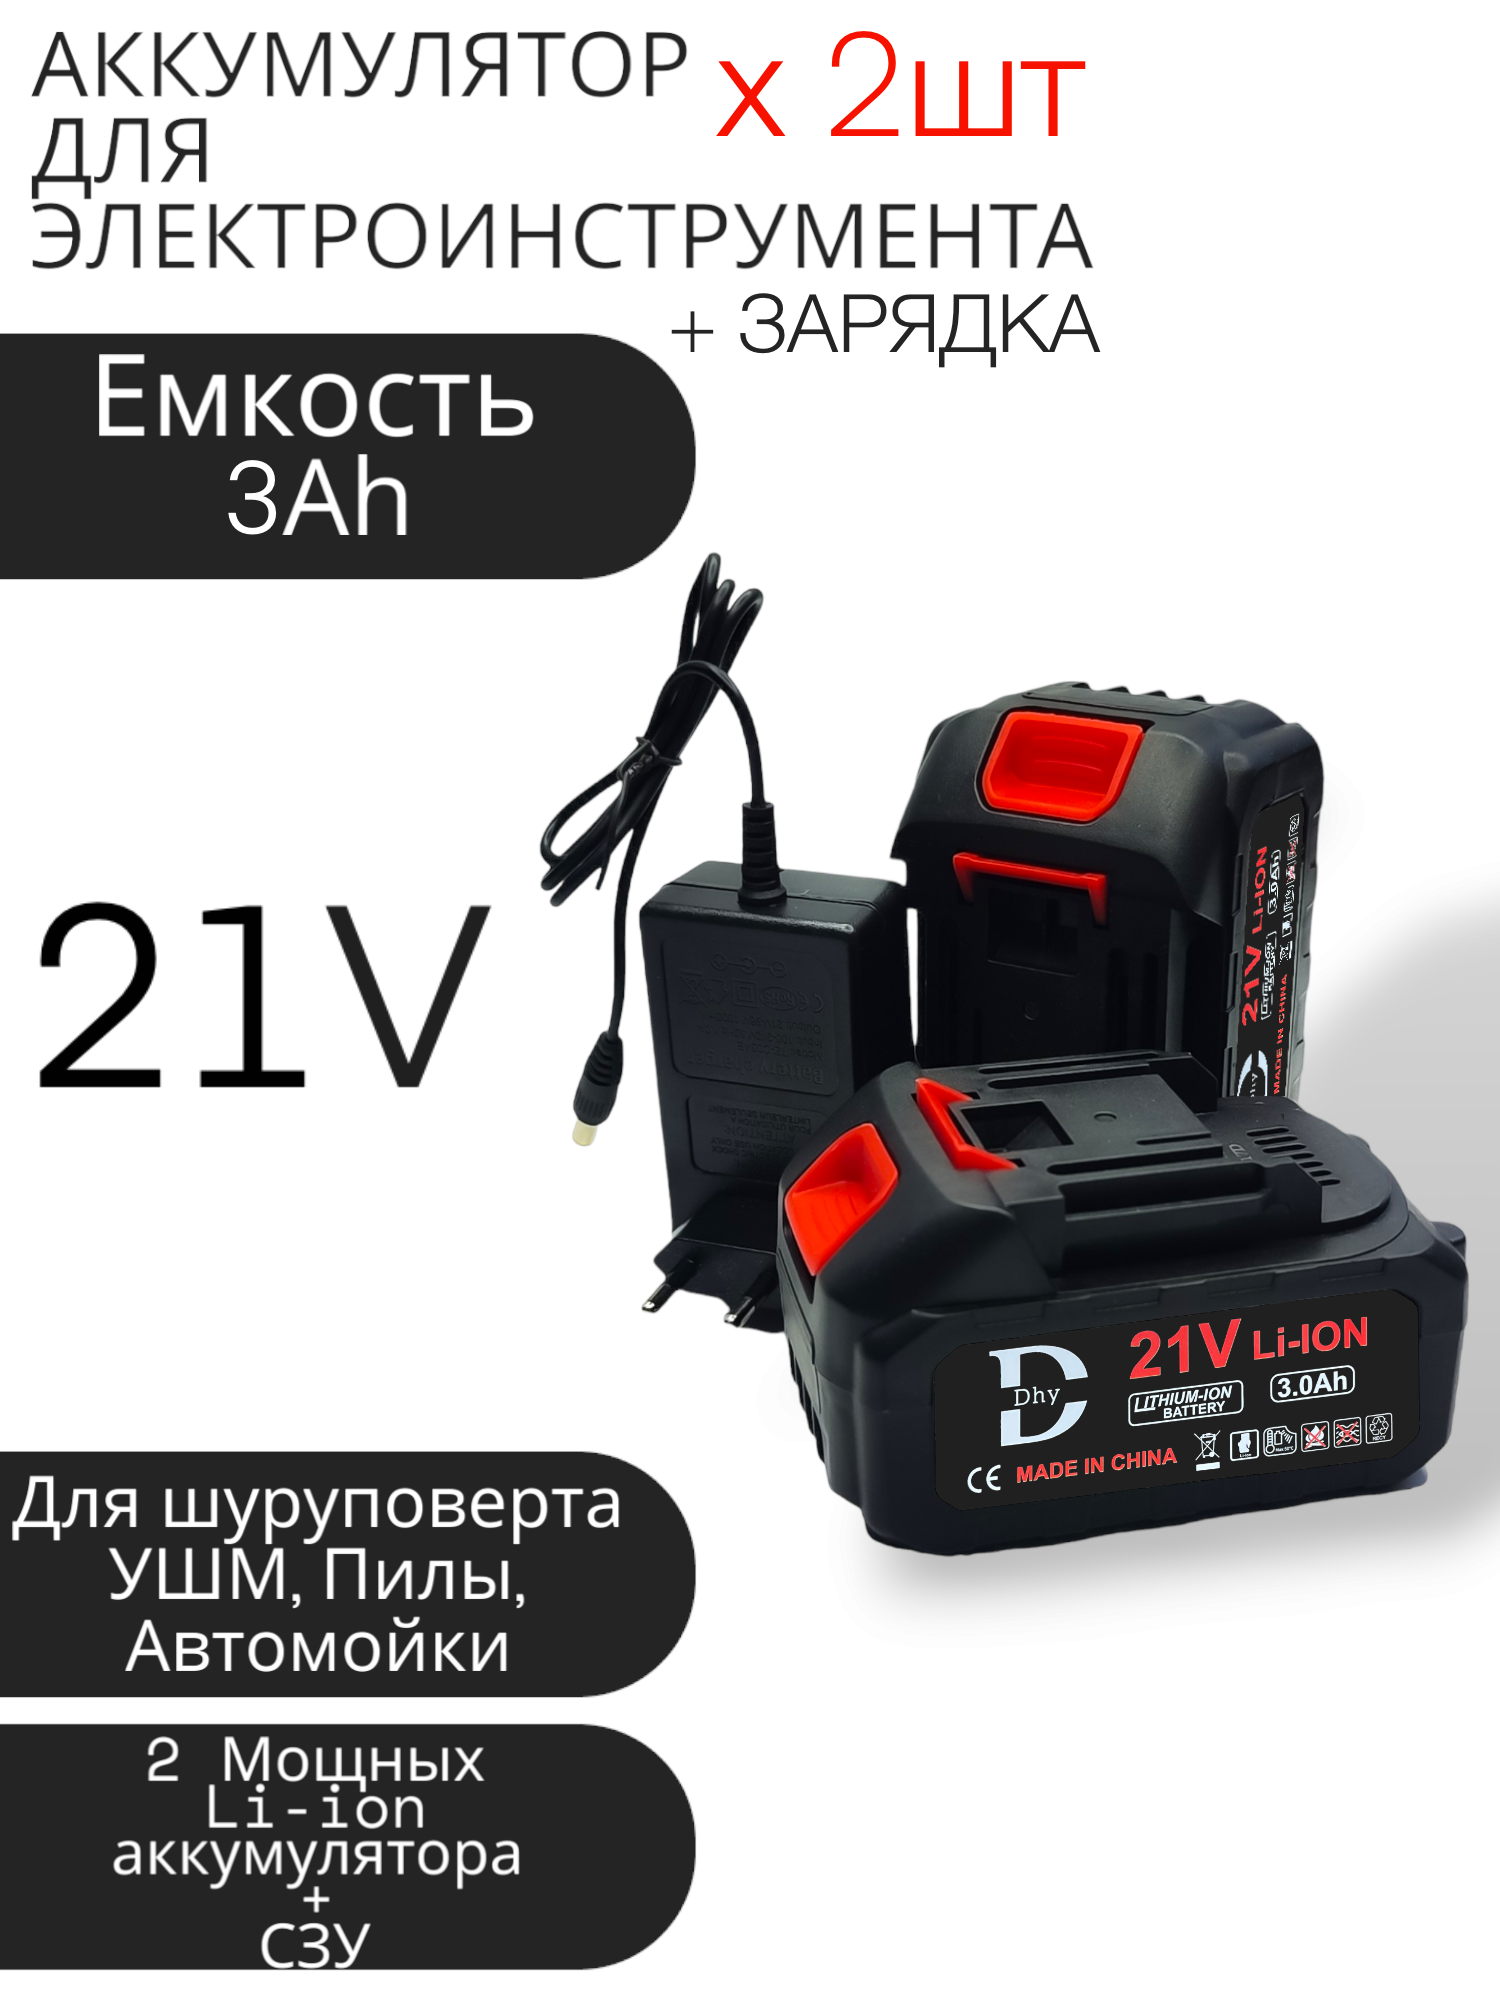 Аккумулятор DHY 3Ah - 2 шт + зарядка, универсальный для электроинструмента (электропила, ушм, шуруповерт, болгарка, гайковерт, триммер, воздуходувка, газонокосилка)